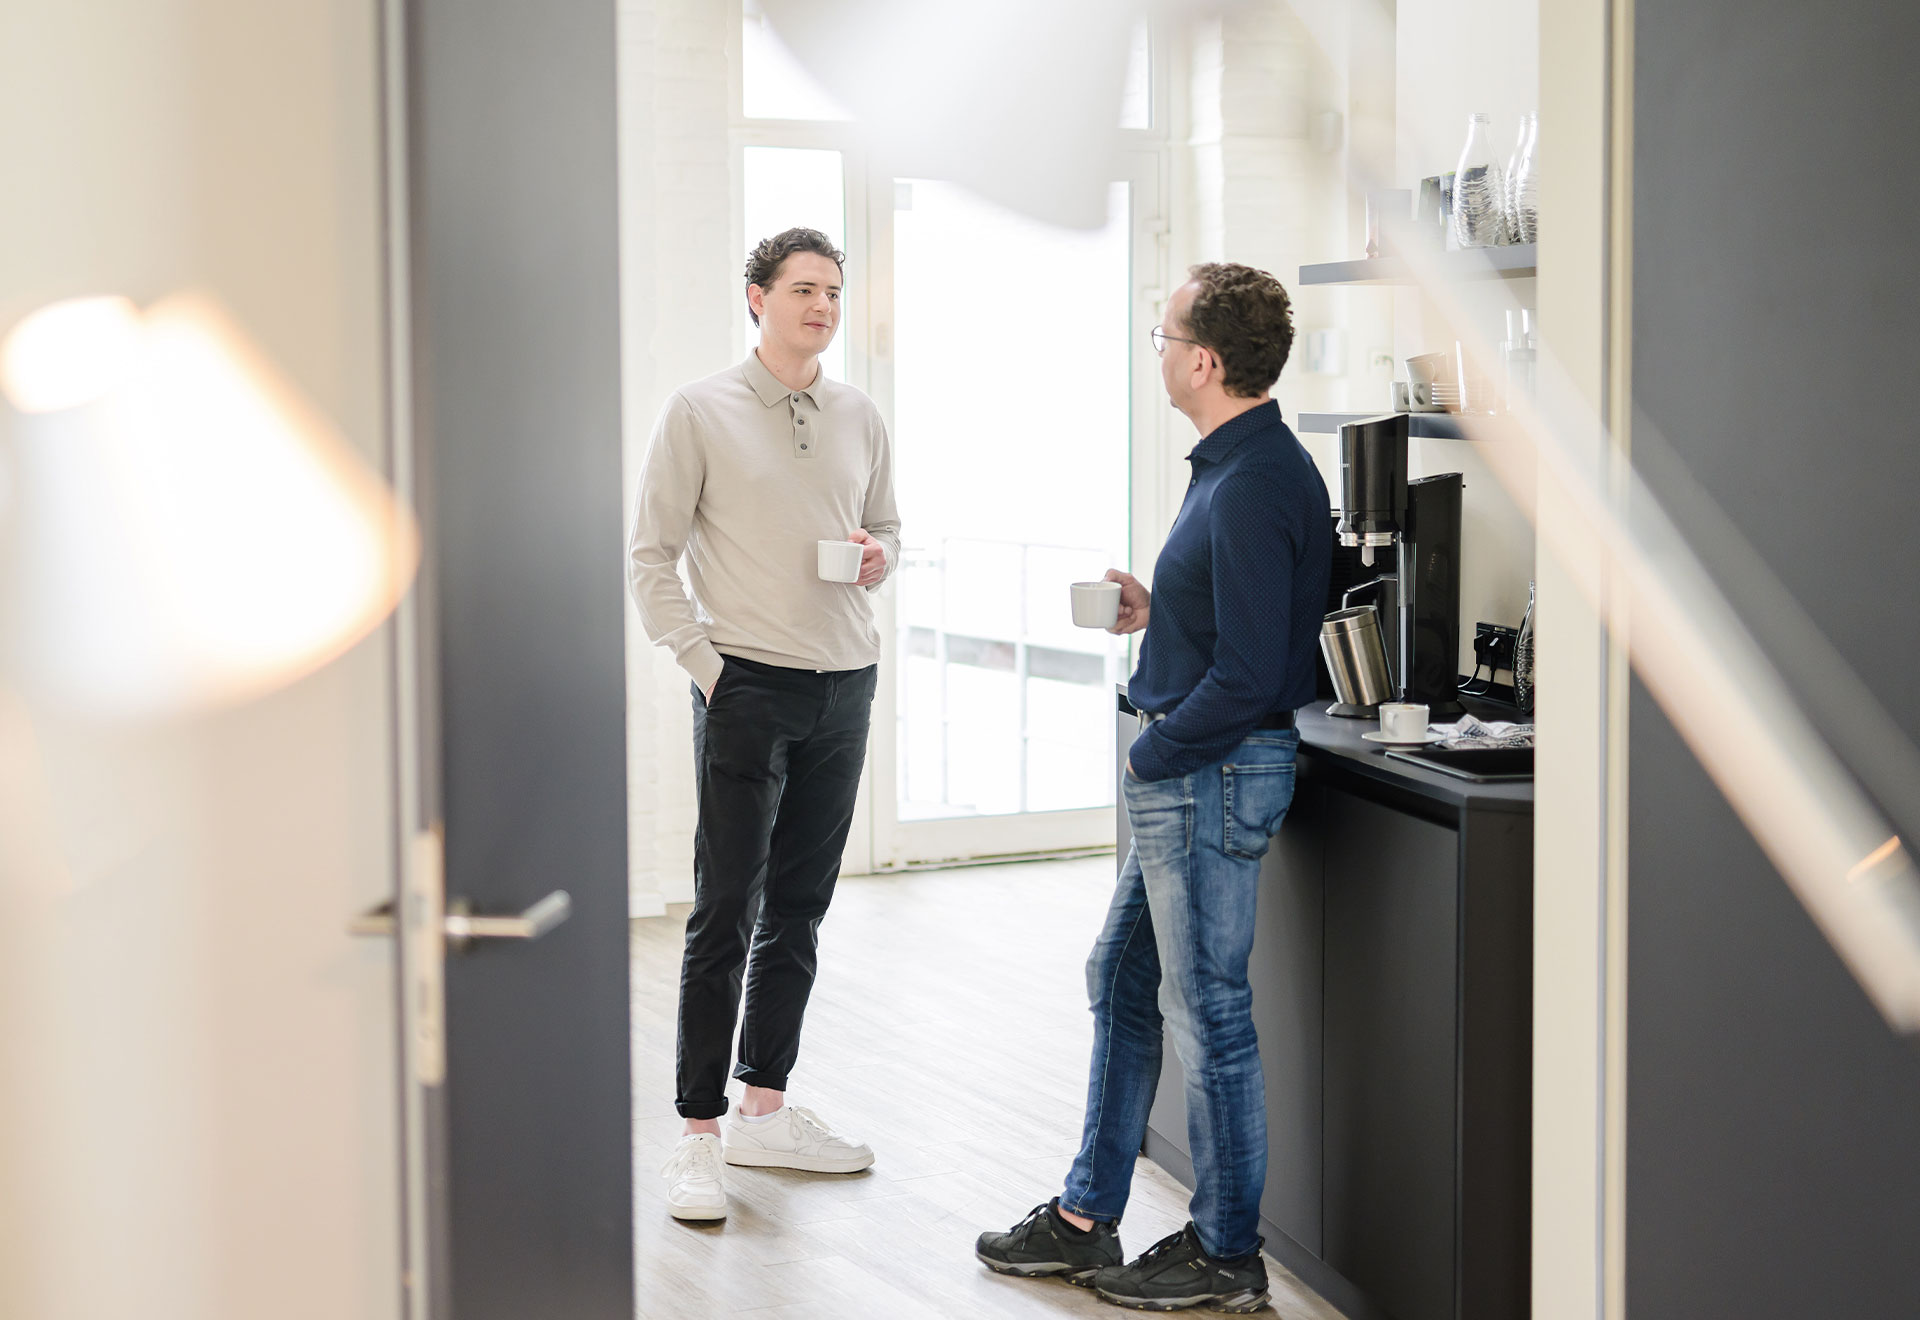 NOVIA GmbH Consulting und Baumanagement - Momentaufnahme lockeres Gespräch zweier Kollegen in der Teeküche